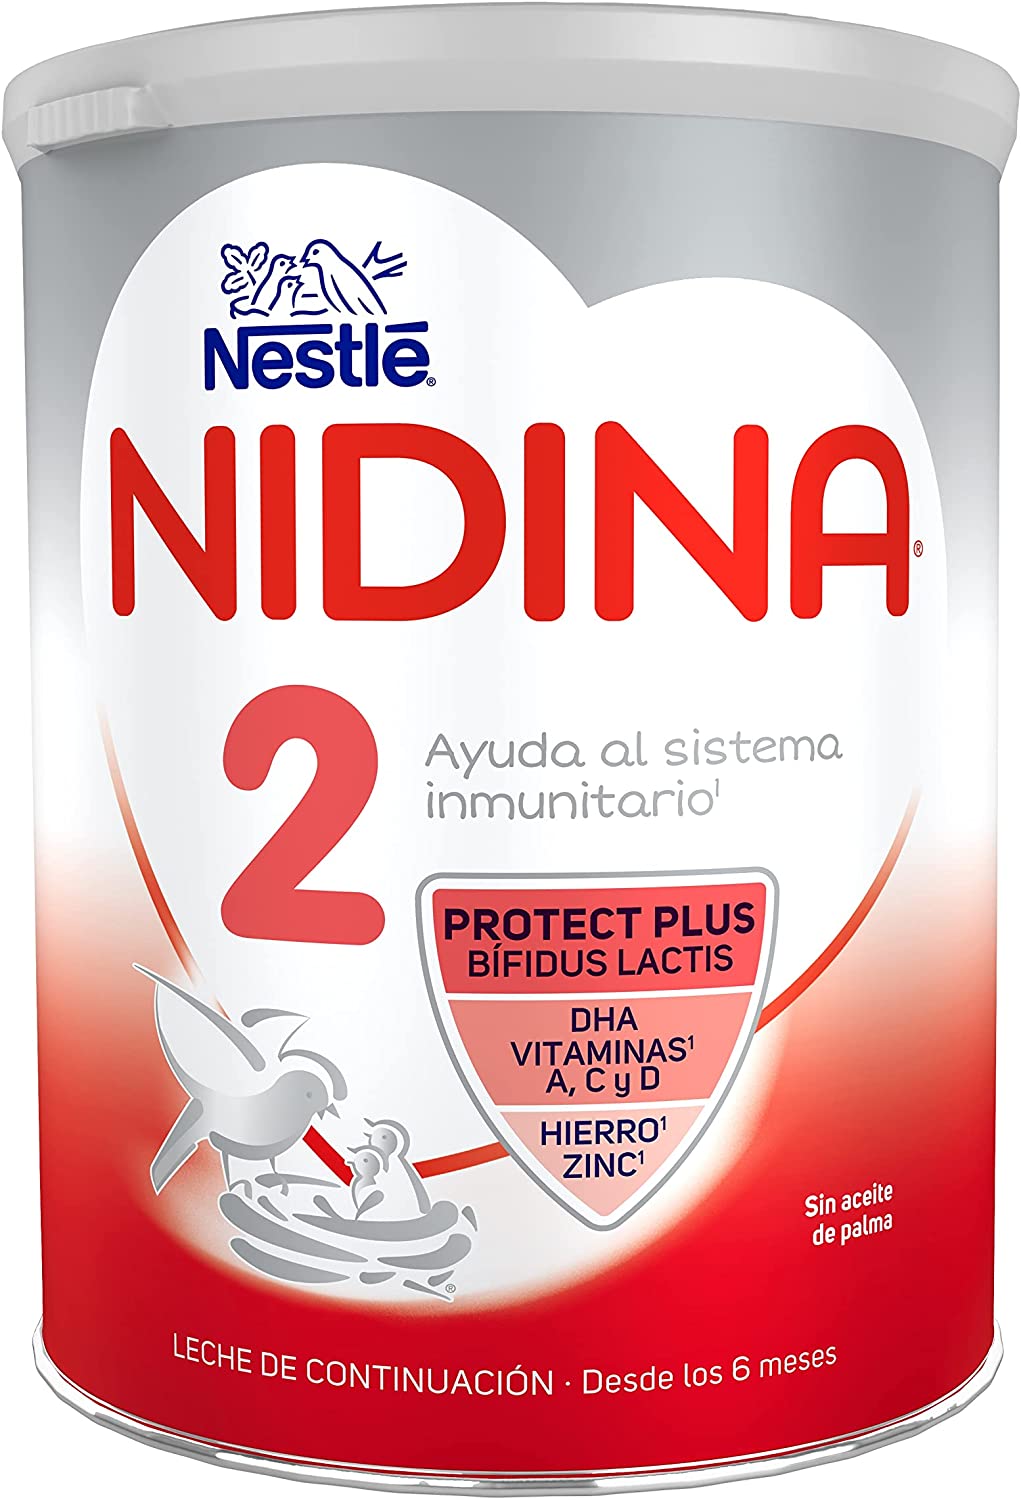 NIDINA 2 BB X 800 GR